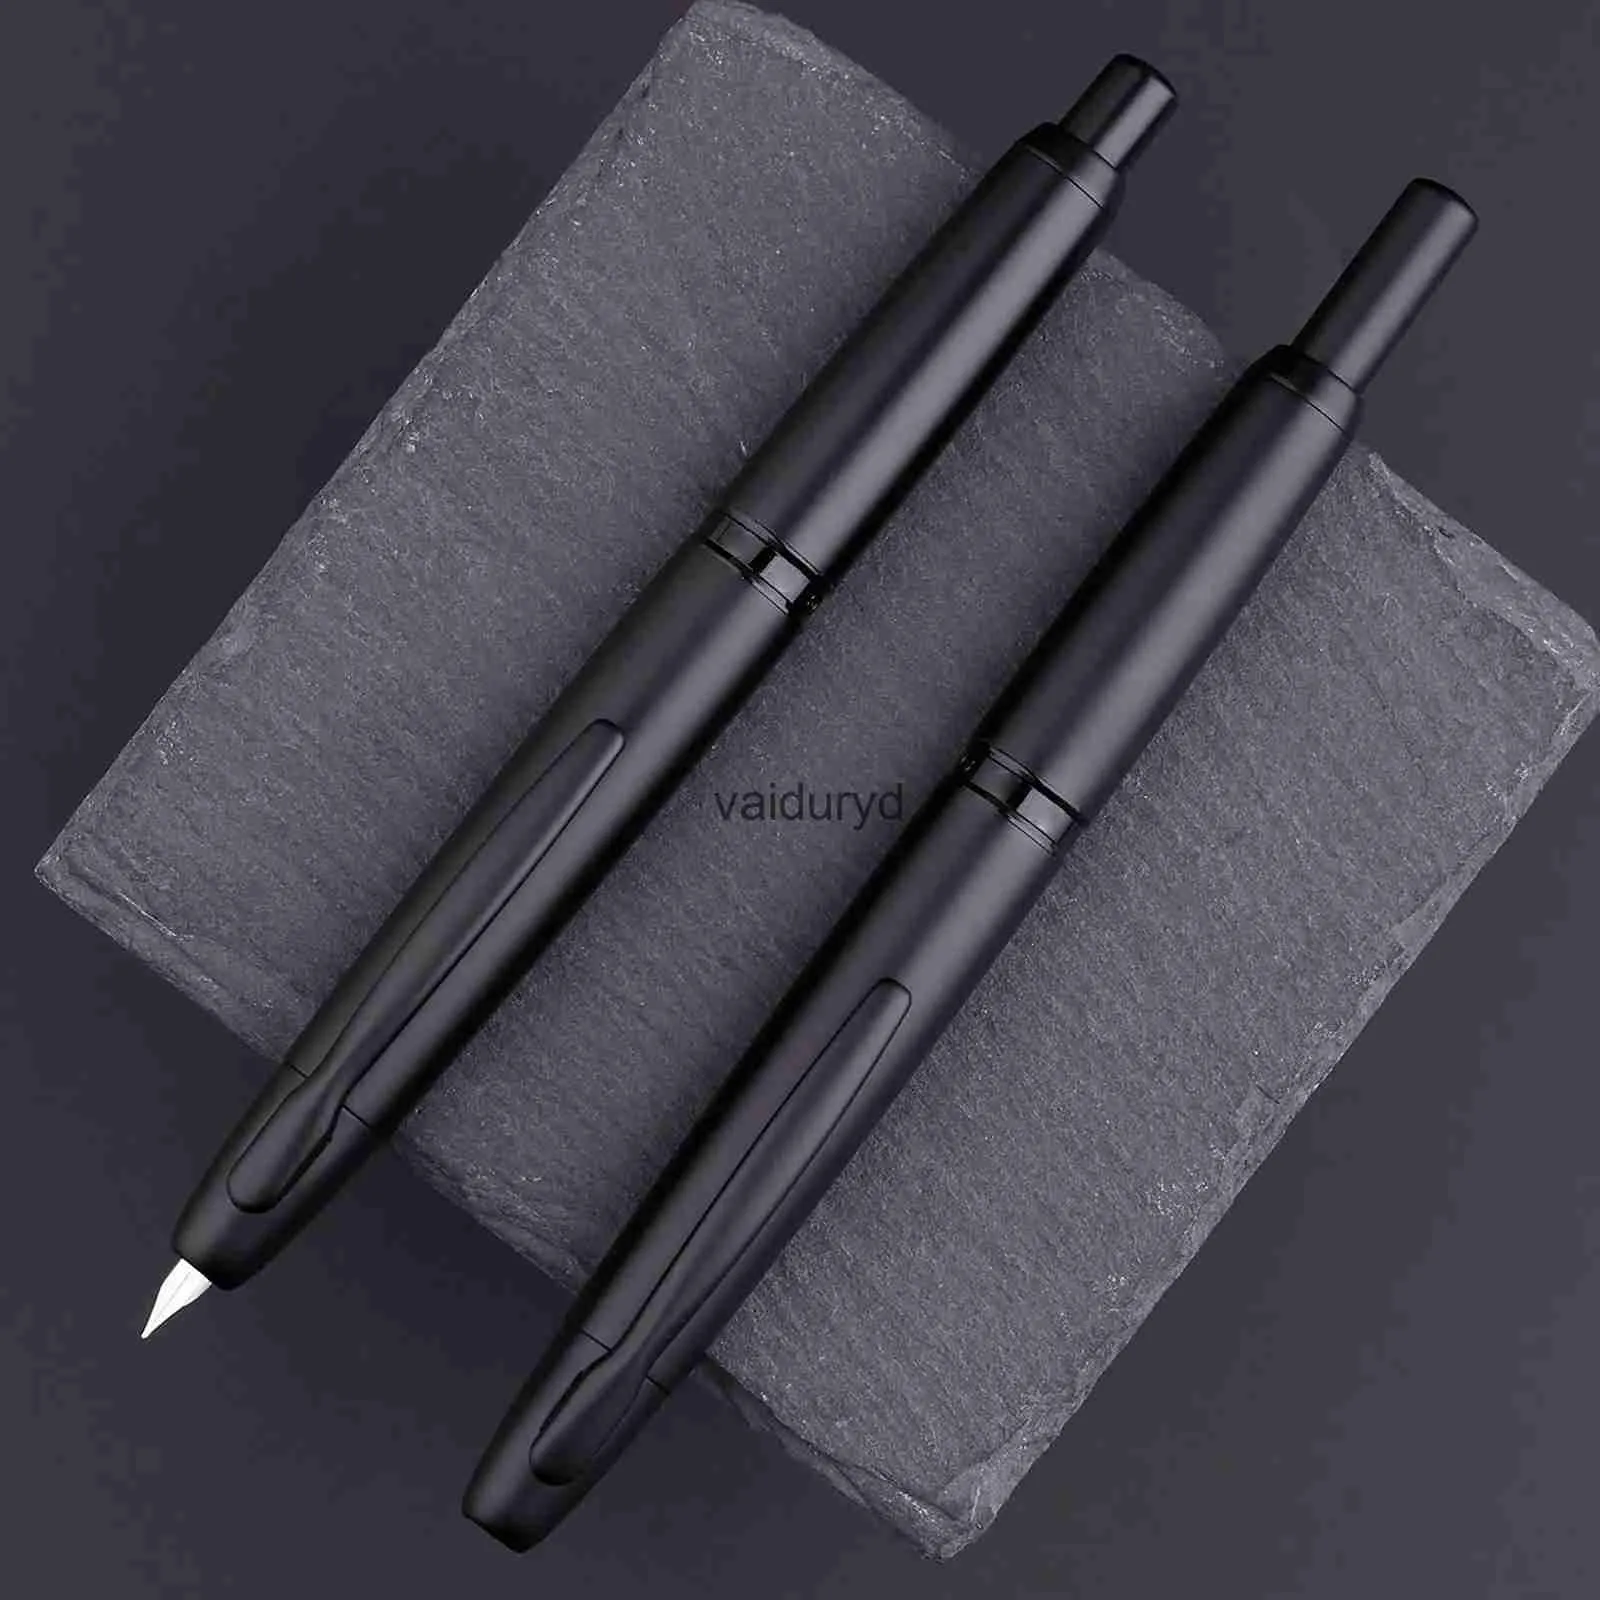 Перьевые ручки в подарок MAJOHN A1 Press Pen, выдвижной наконечник EF, 0,4 мм, металлические матовые черные чернила для письма с конвертером для студентов, подаркиvaiduryd